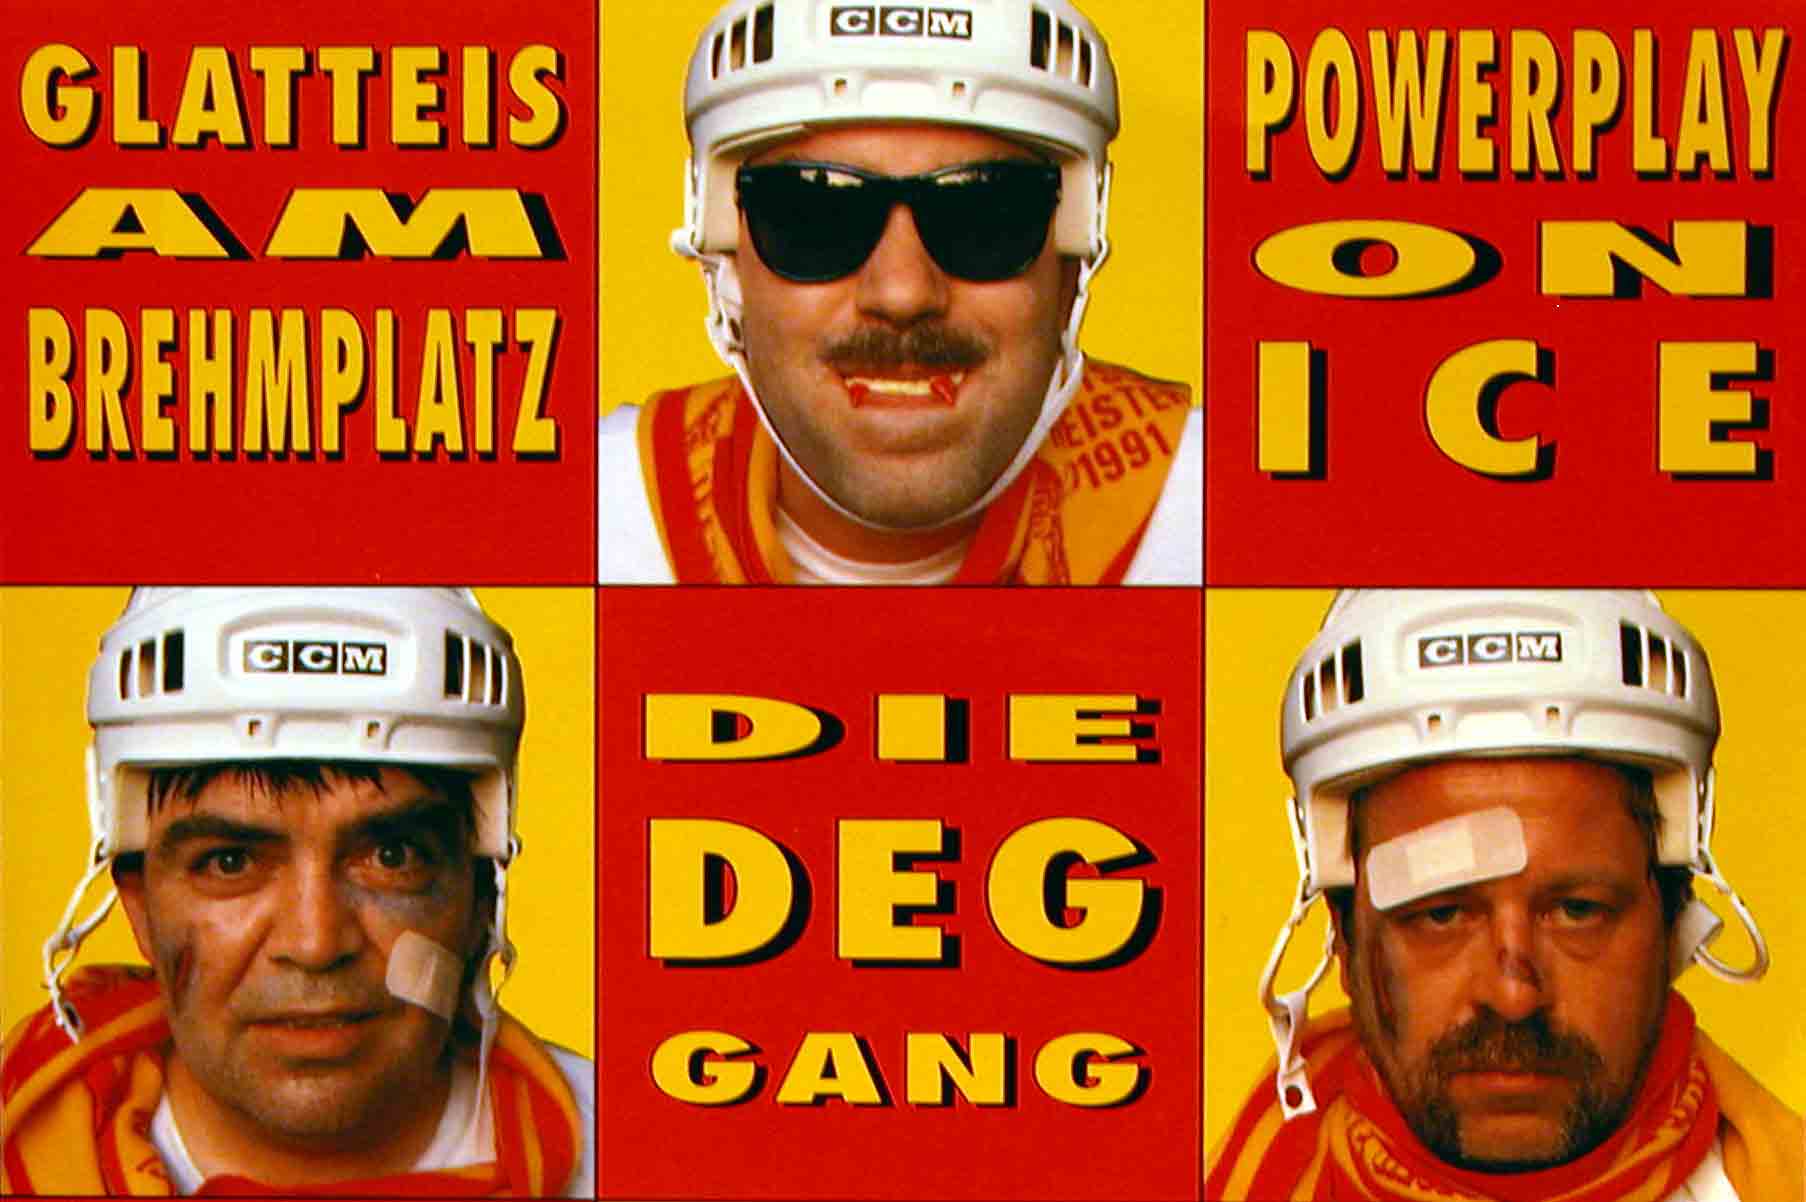 DEG Gang